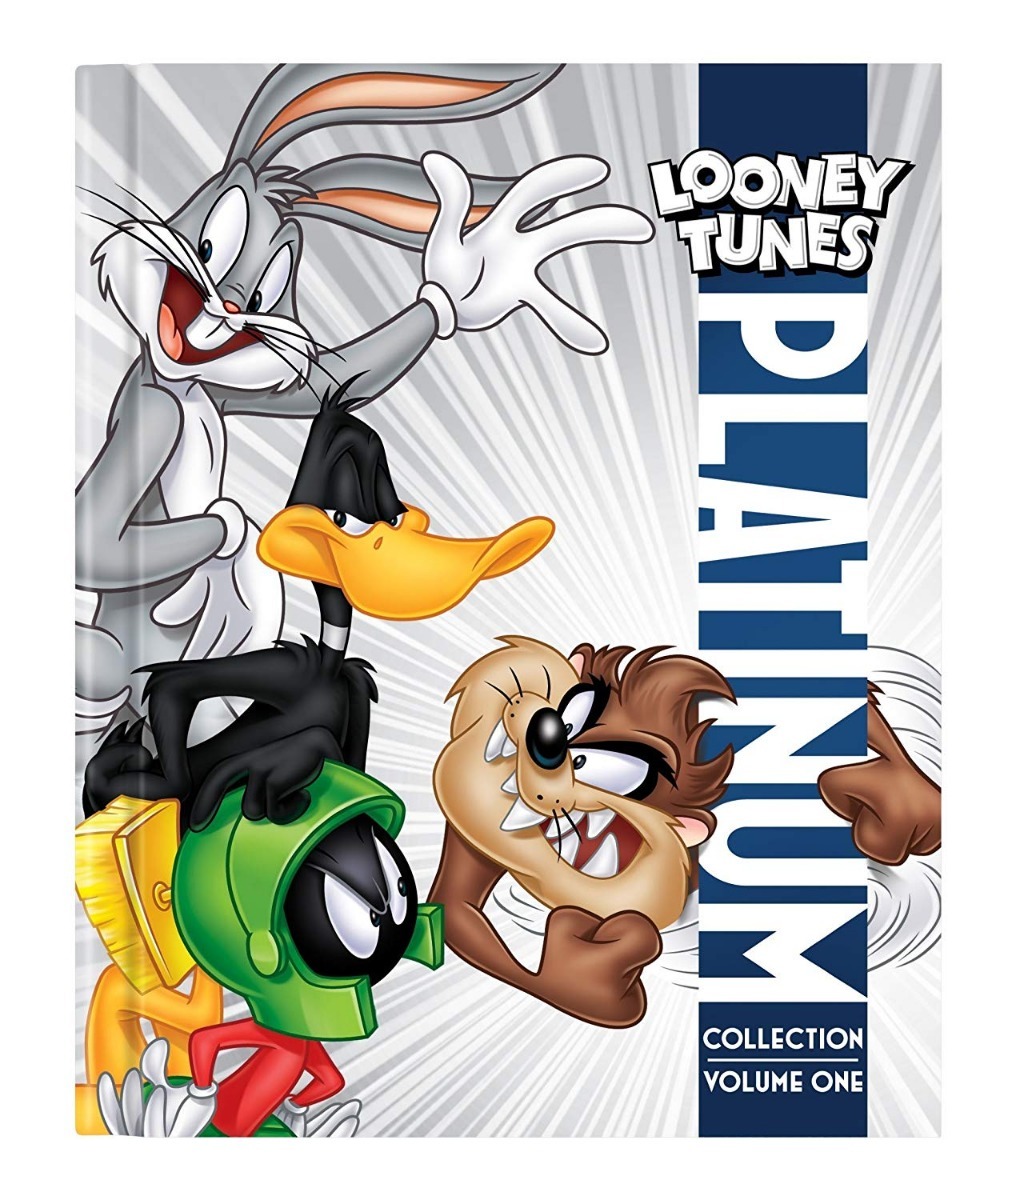 Looney Tunes Platinum Collection VOL 1